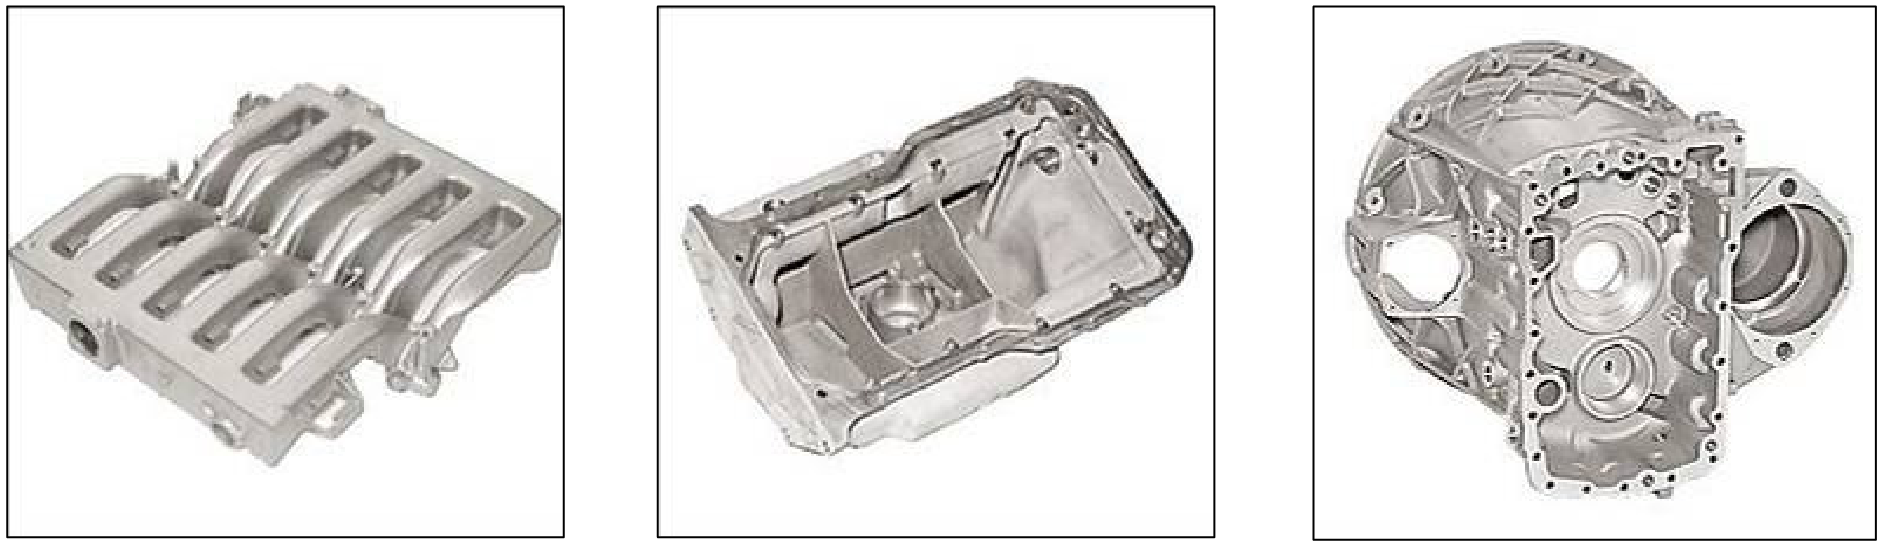 Silindir giriş manifoldu Malzeme : Al alaşımı G-AlSiCu3 Ağırlık: 16,8 kg Yağ karteli Malzeme : Al alaşımı G-AlSiMg (sıcak